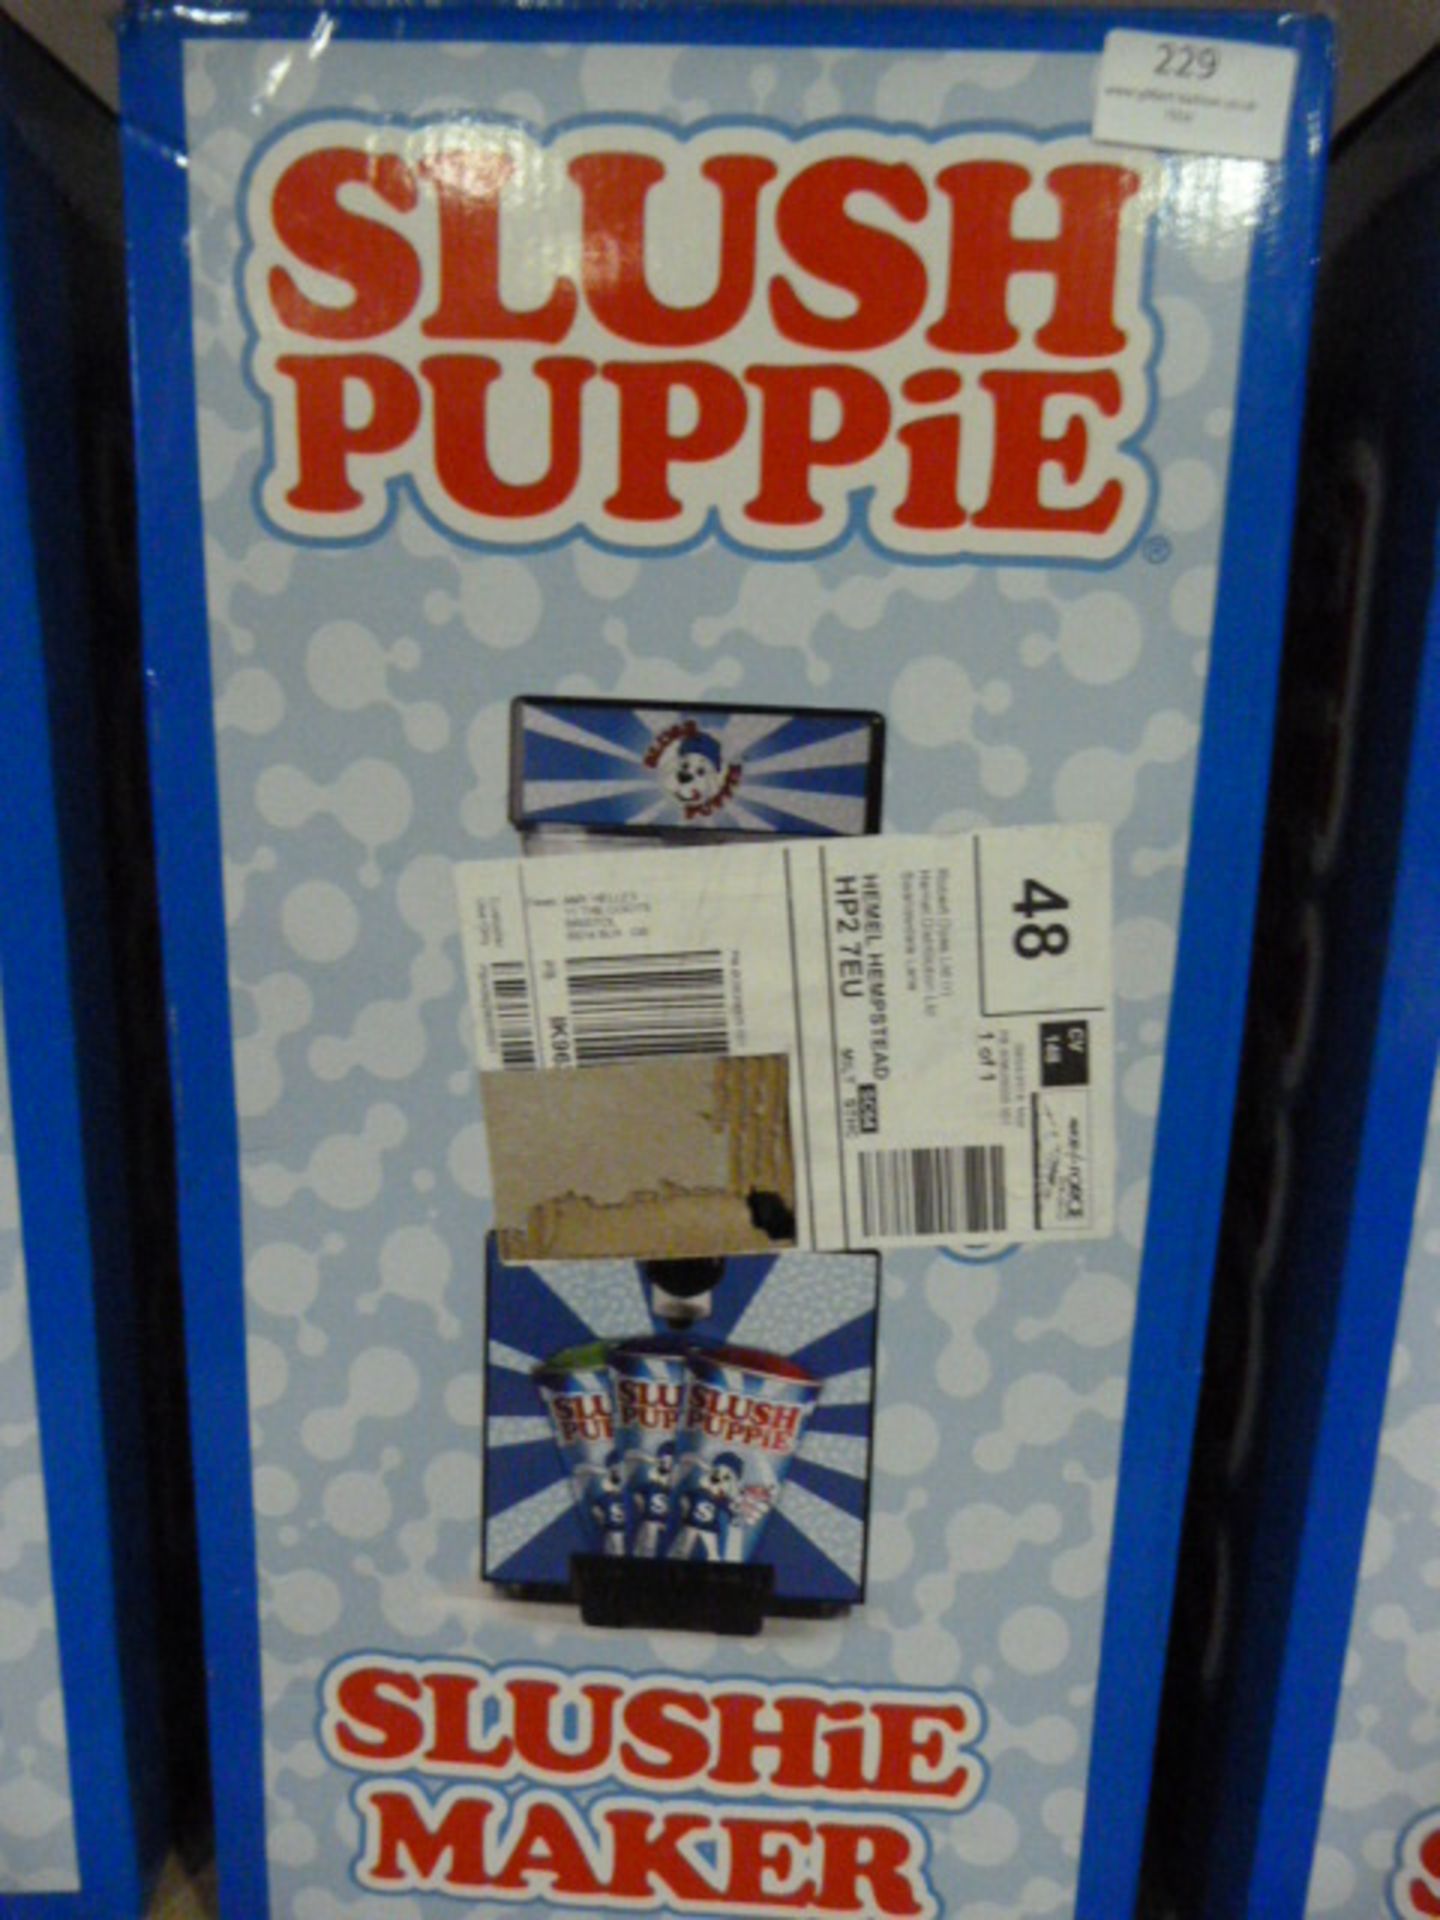 *Slush Puppie Machine